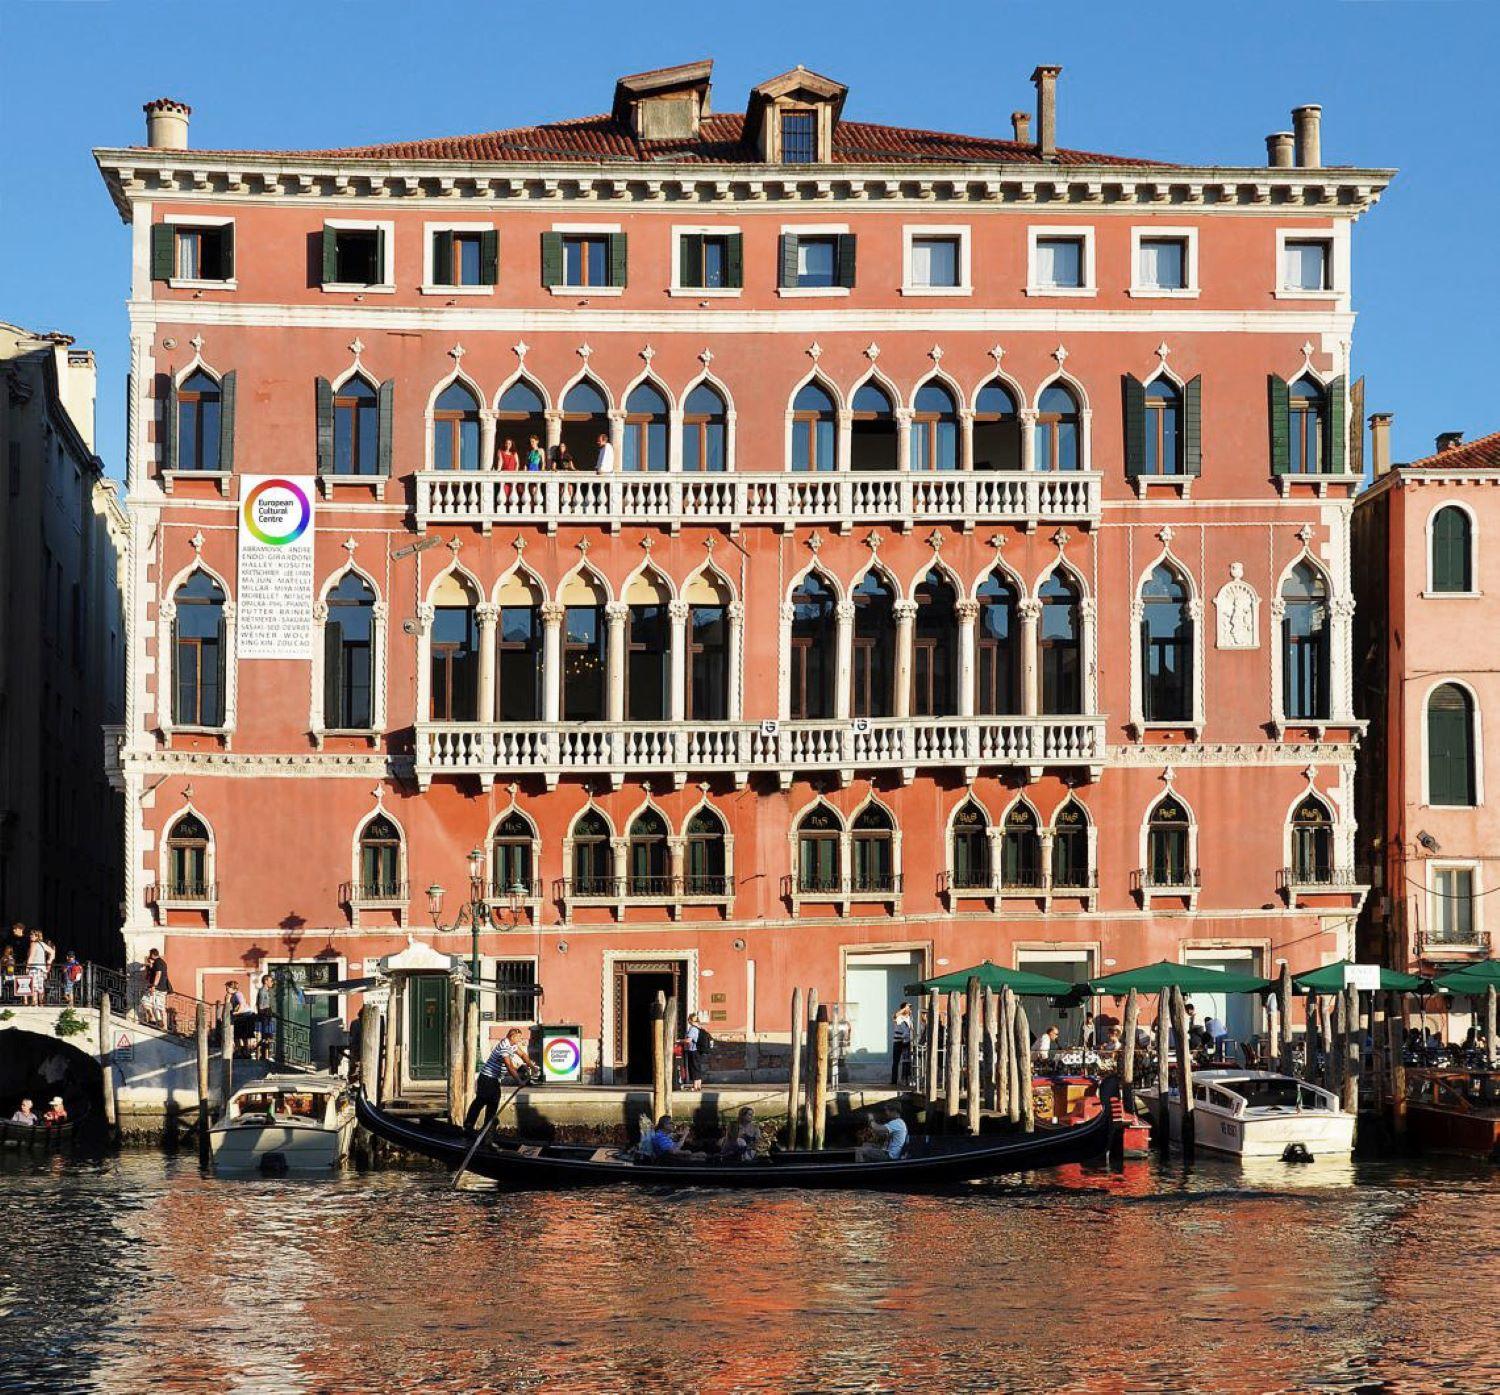 Palazzo Bembo w Wenecji - lokalizacja wystaw KWK Promes oraz Franta Group